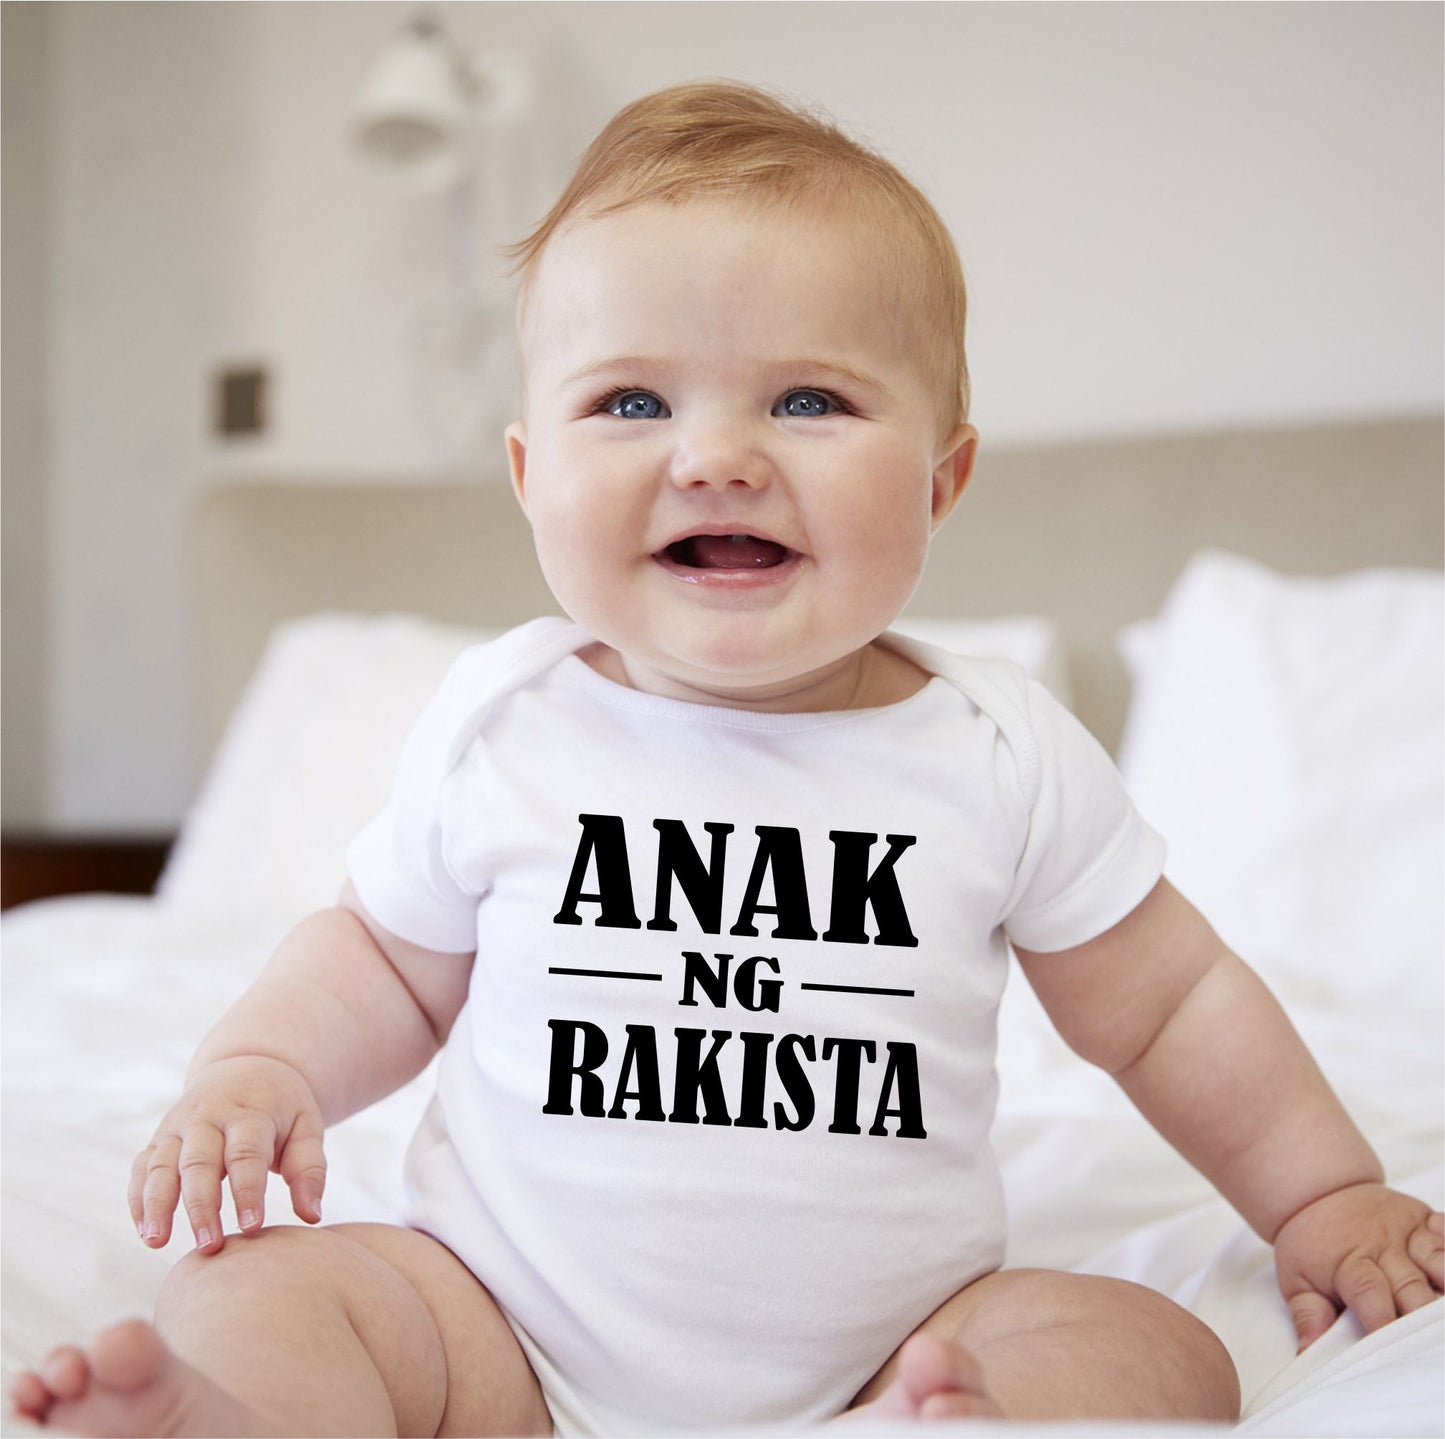 Baby Statement Onesies - Anak ng Rakista